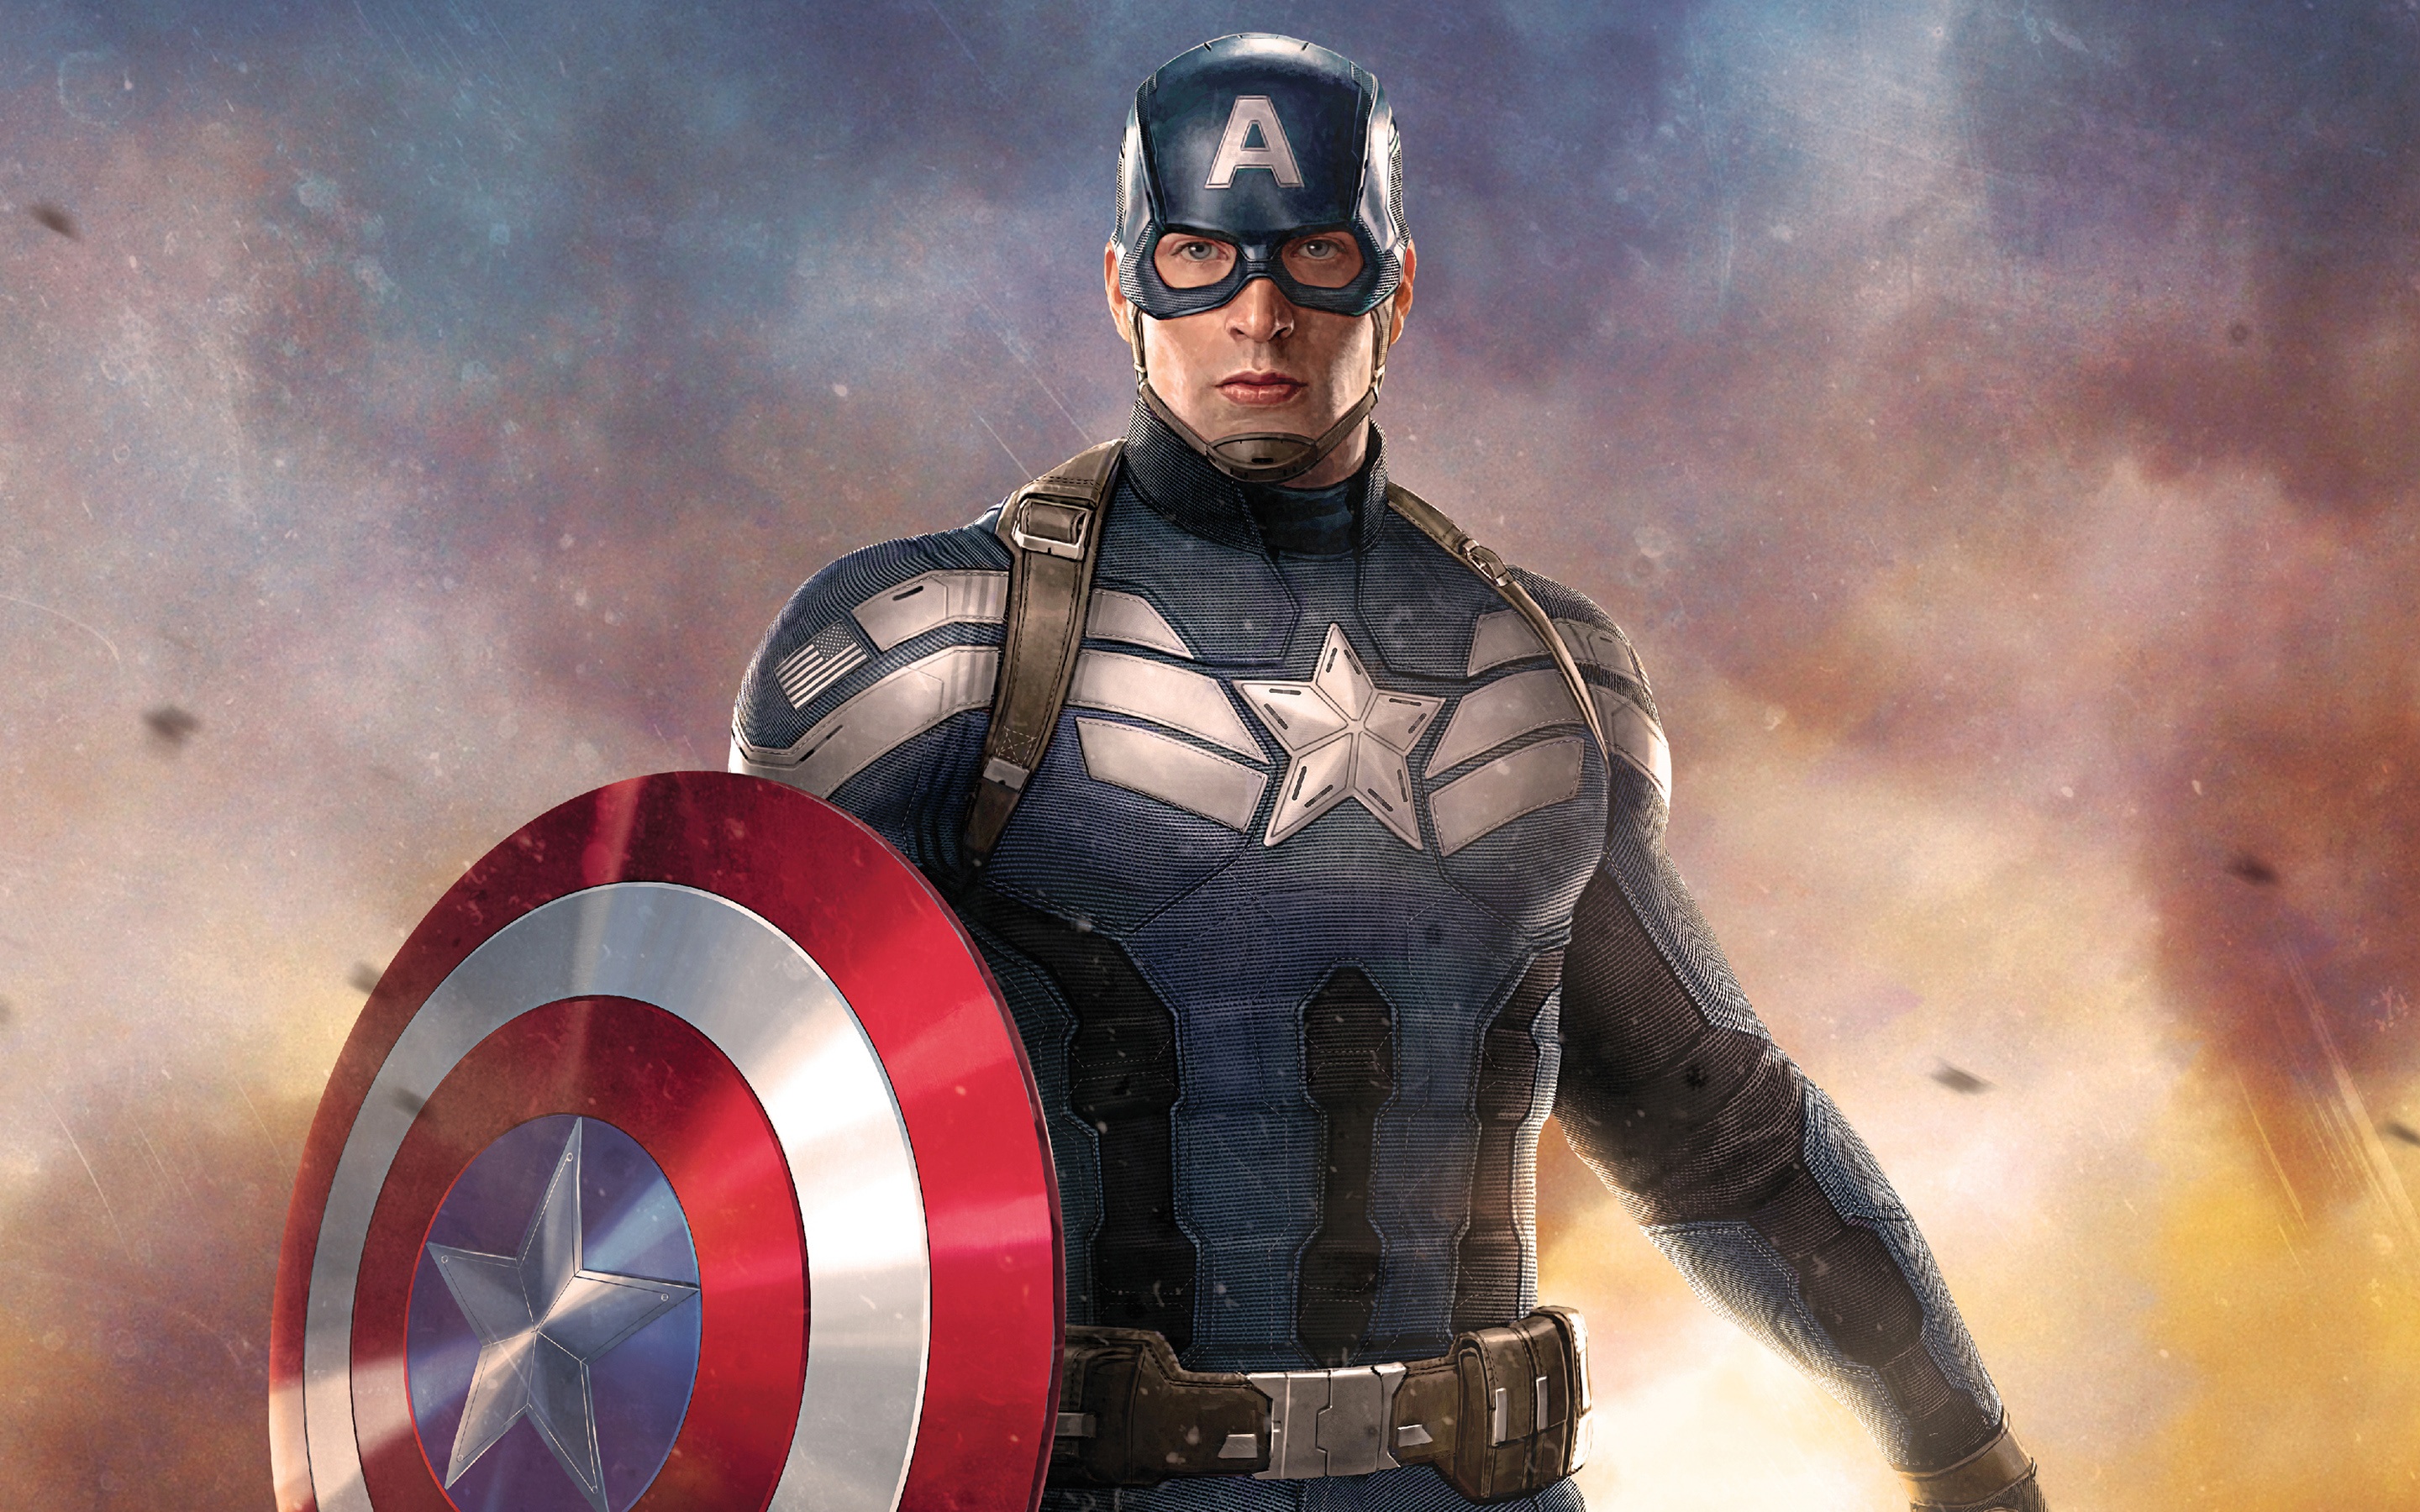 マーベル壁紙hd,スーパーヒーロー,架空の人物,キャプテン・アメリカ,映画,ヒーロー